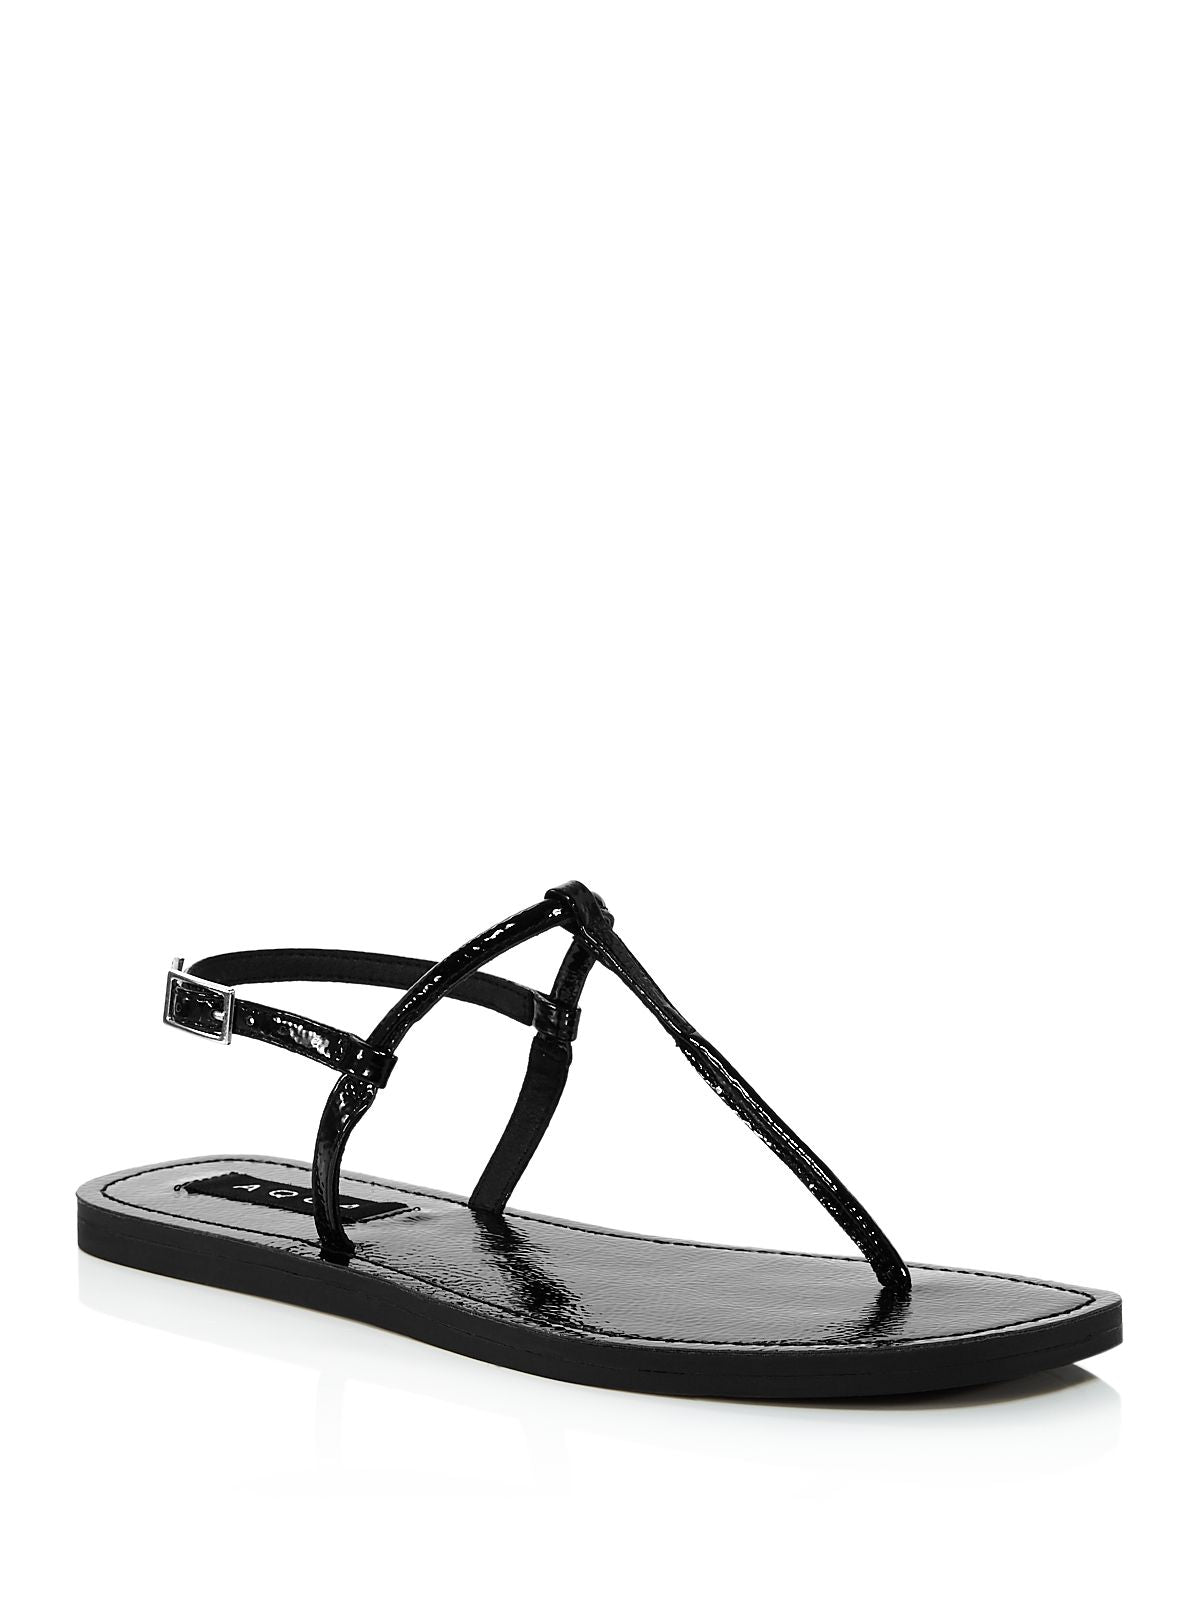 AQUA Womens Black T-Strap Zen Round Toe Buckle Thong Sandals Shoes 5 M